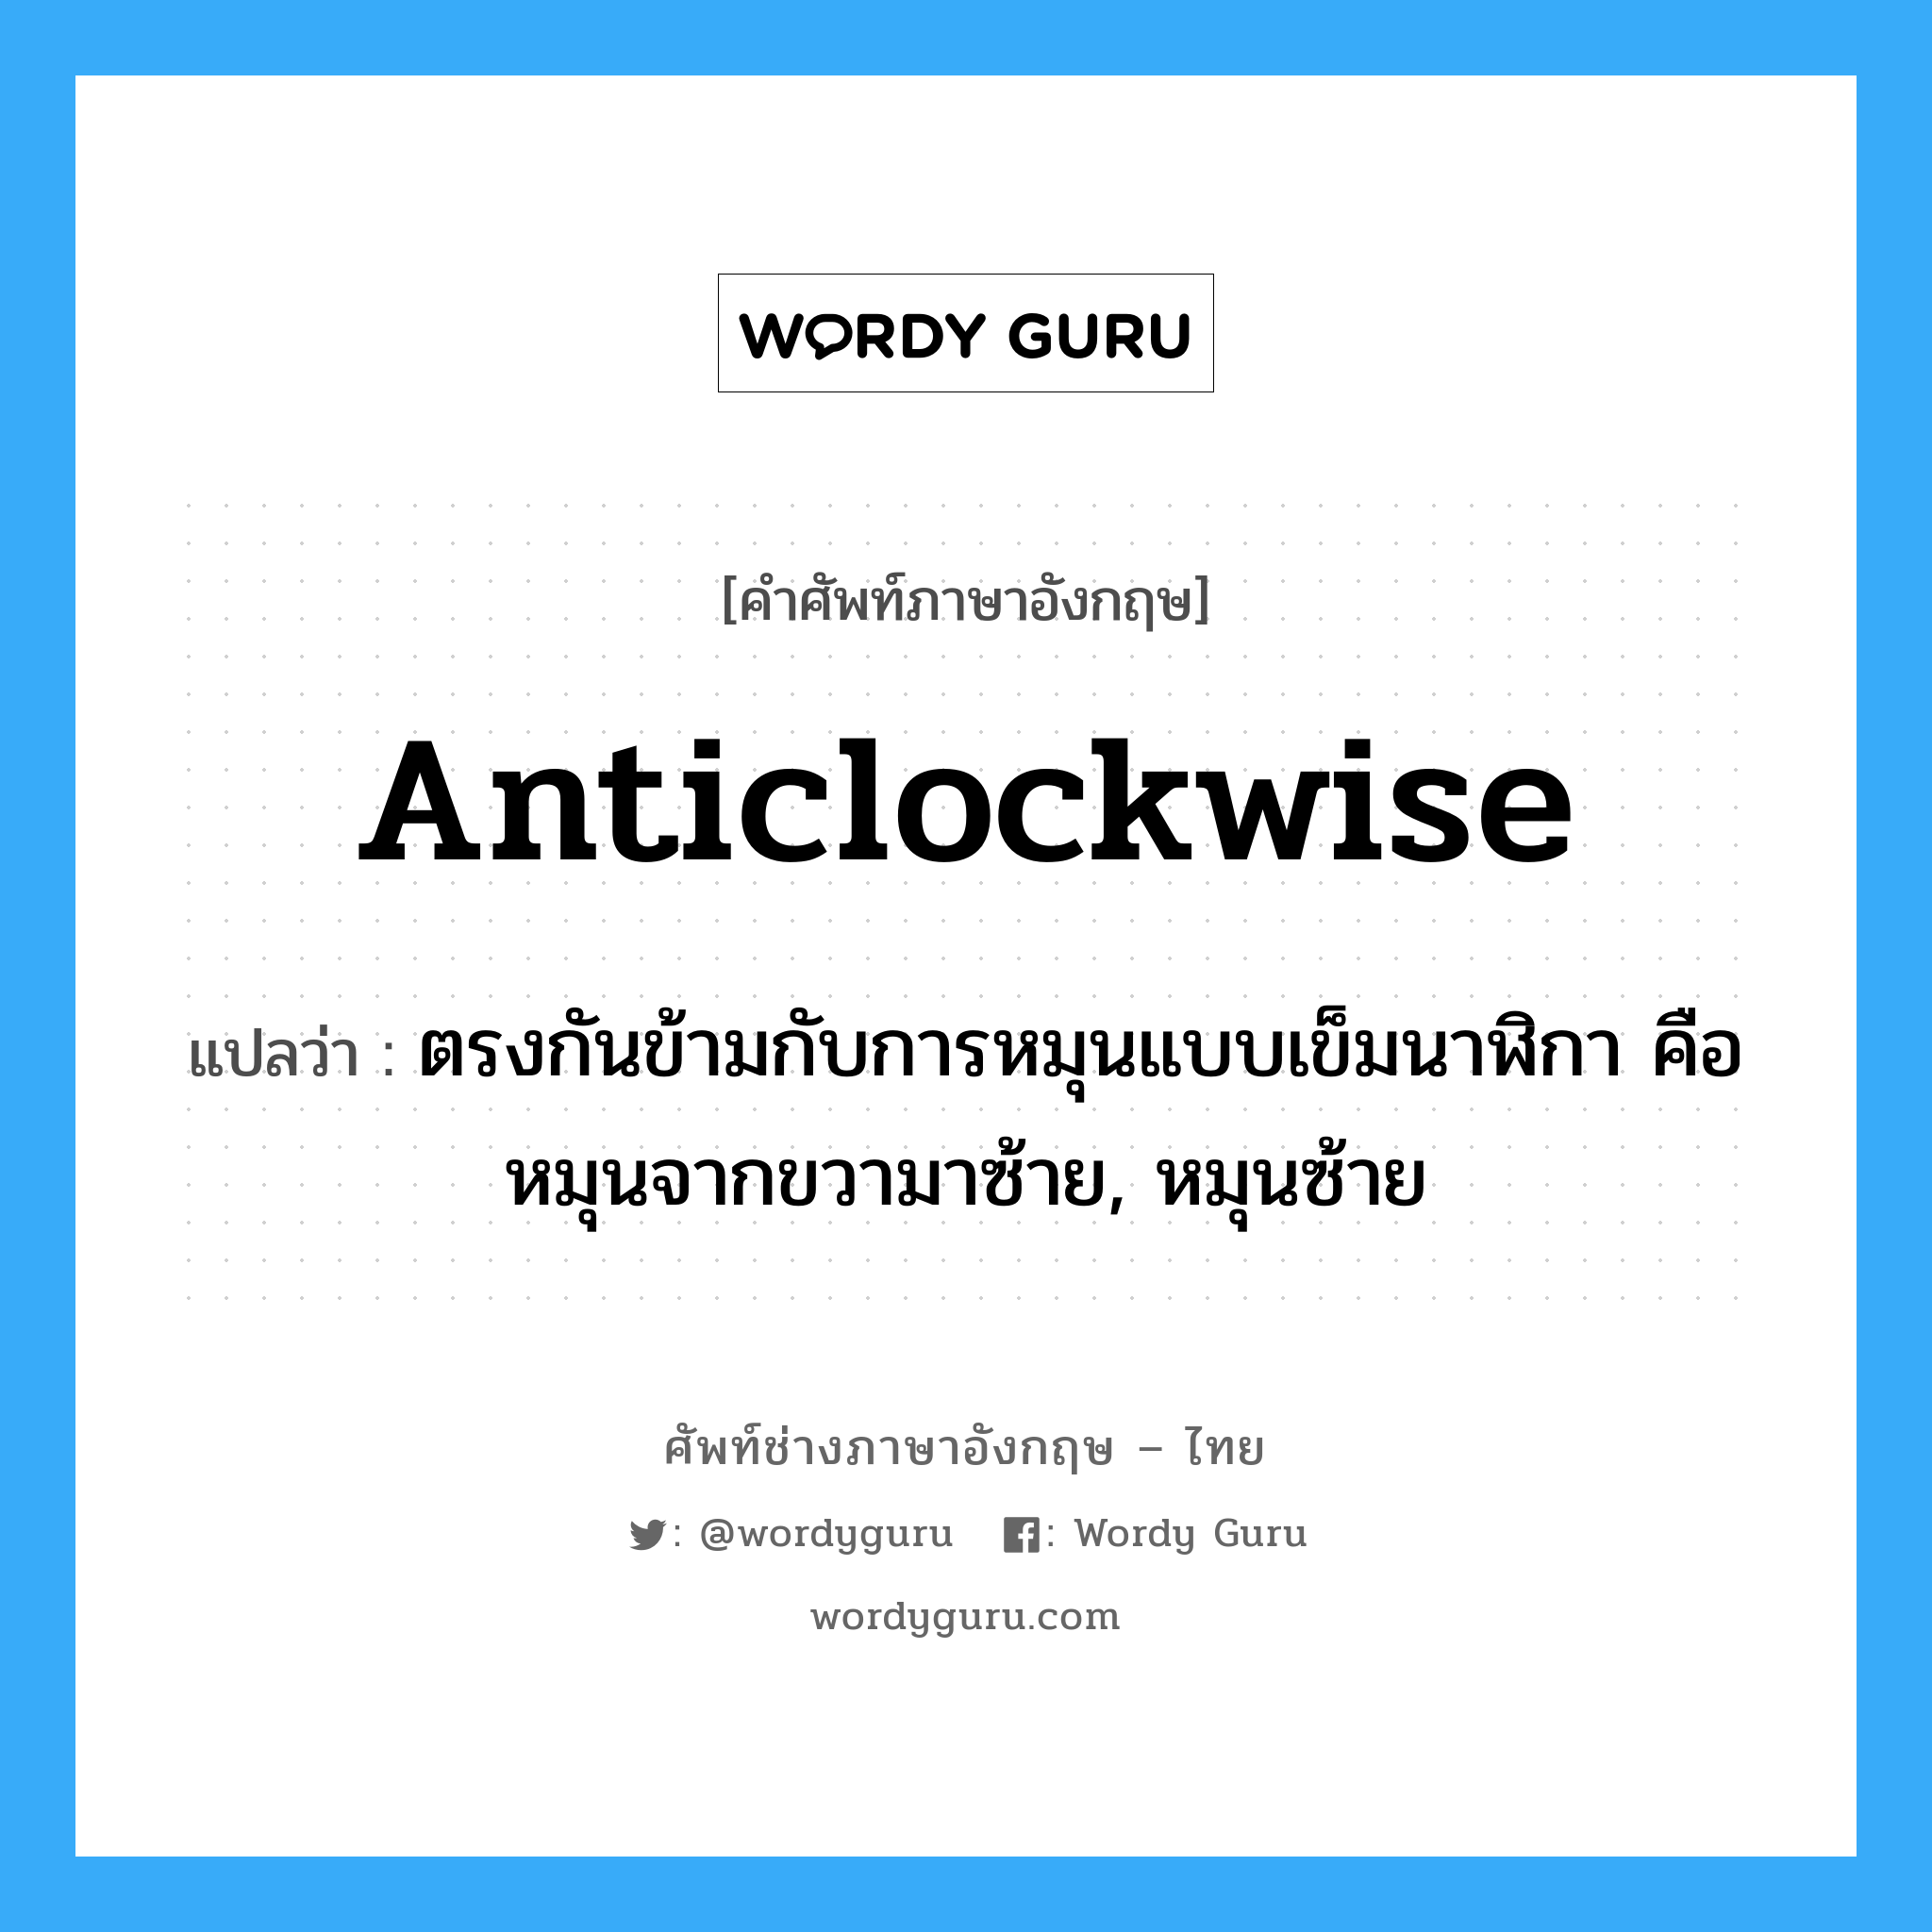 anticlockwise แปลว่า?, คำศัพท์ช่างภาษาอังกฤษ - ไทย anticlockwise คำศัพท์ภาษาอังกฤษ anticlockwise แปลว่า ตรงกันข้ามกับการหมุนแบบเข็มนาฬิกา คือหมุนจากขวามาซ้าย, หมุนซ้าย